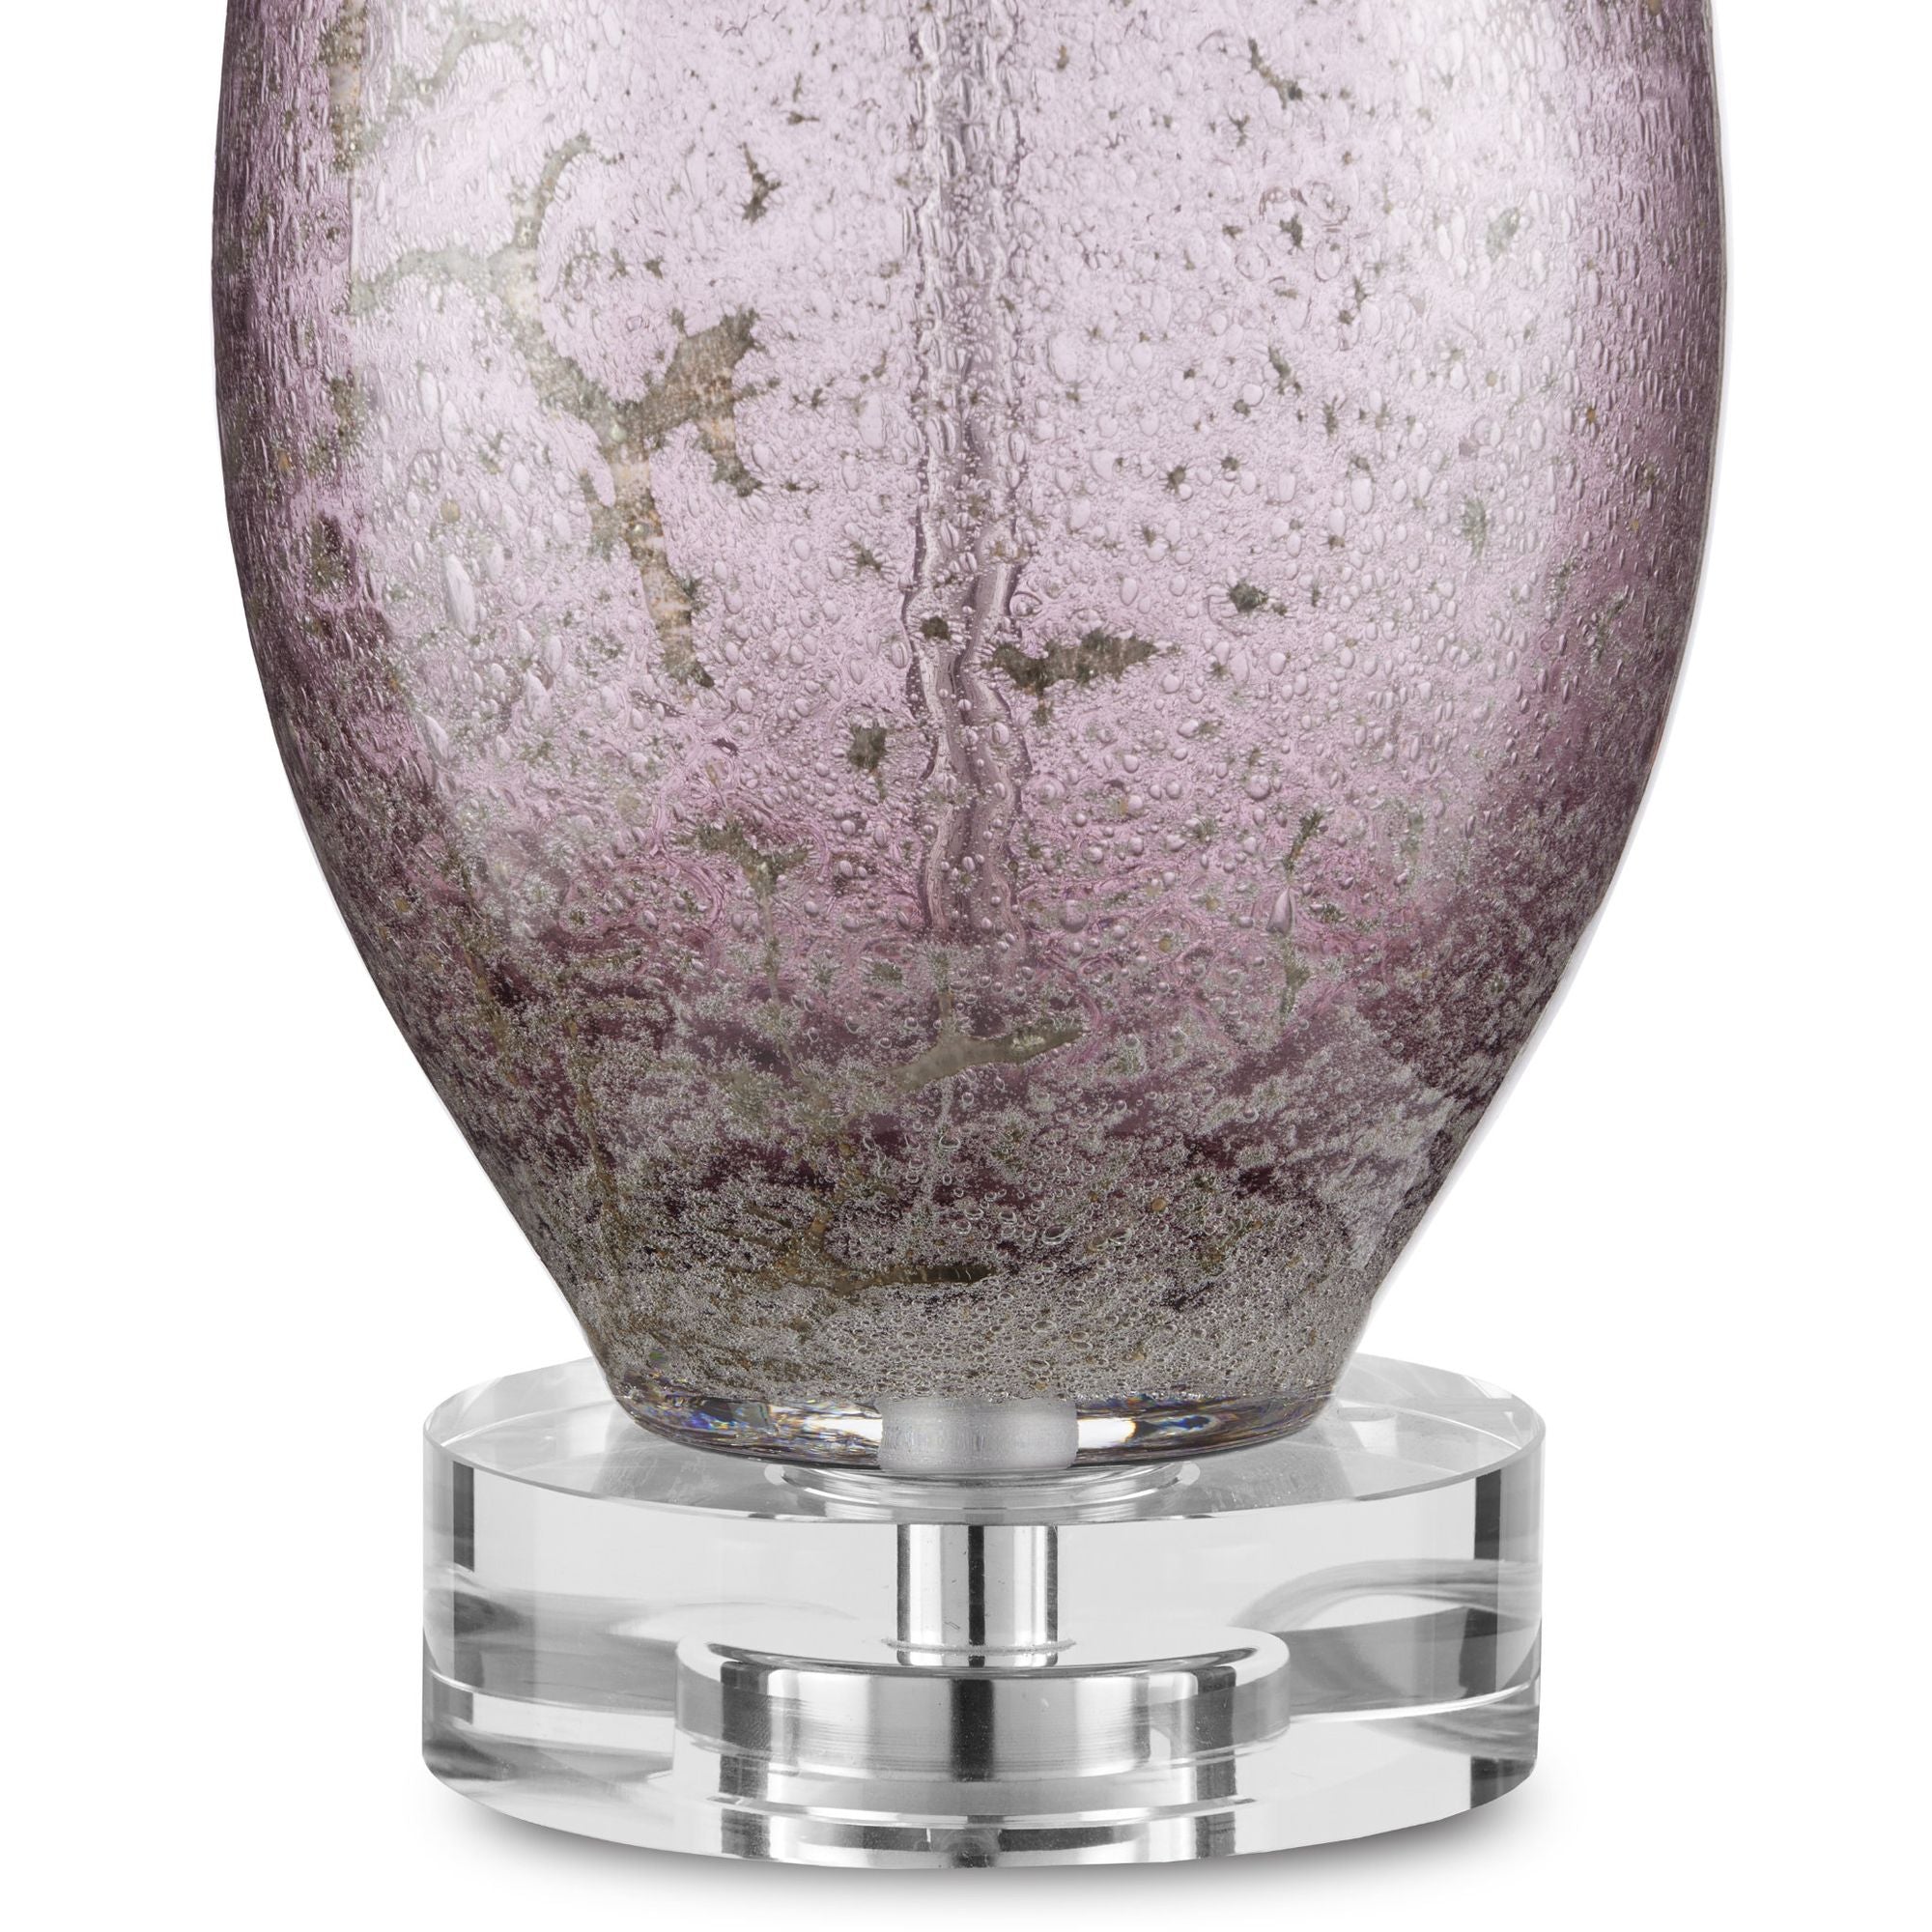 Optimist Purple Table Lamp - Purple/Clear/Antique Nickel